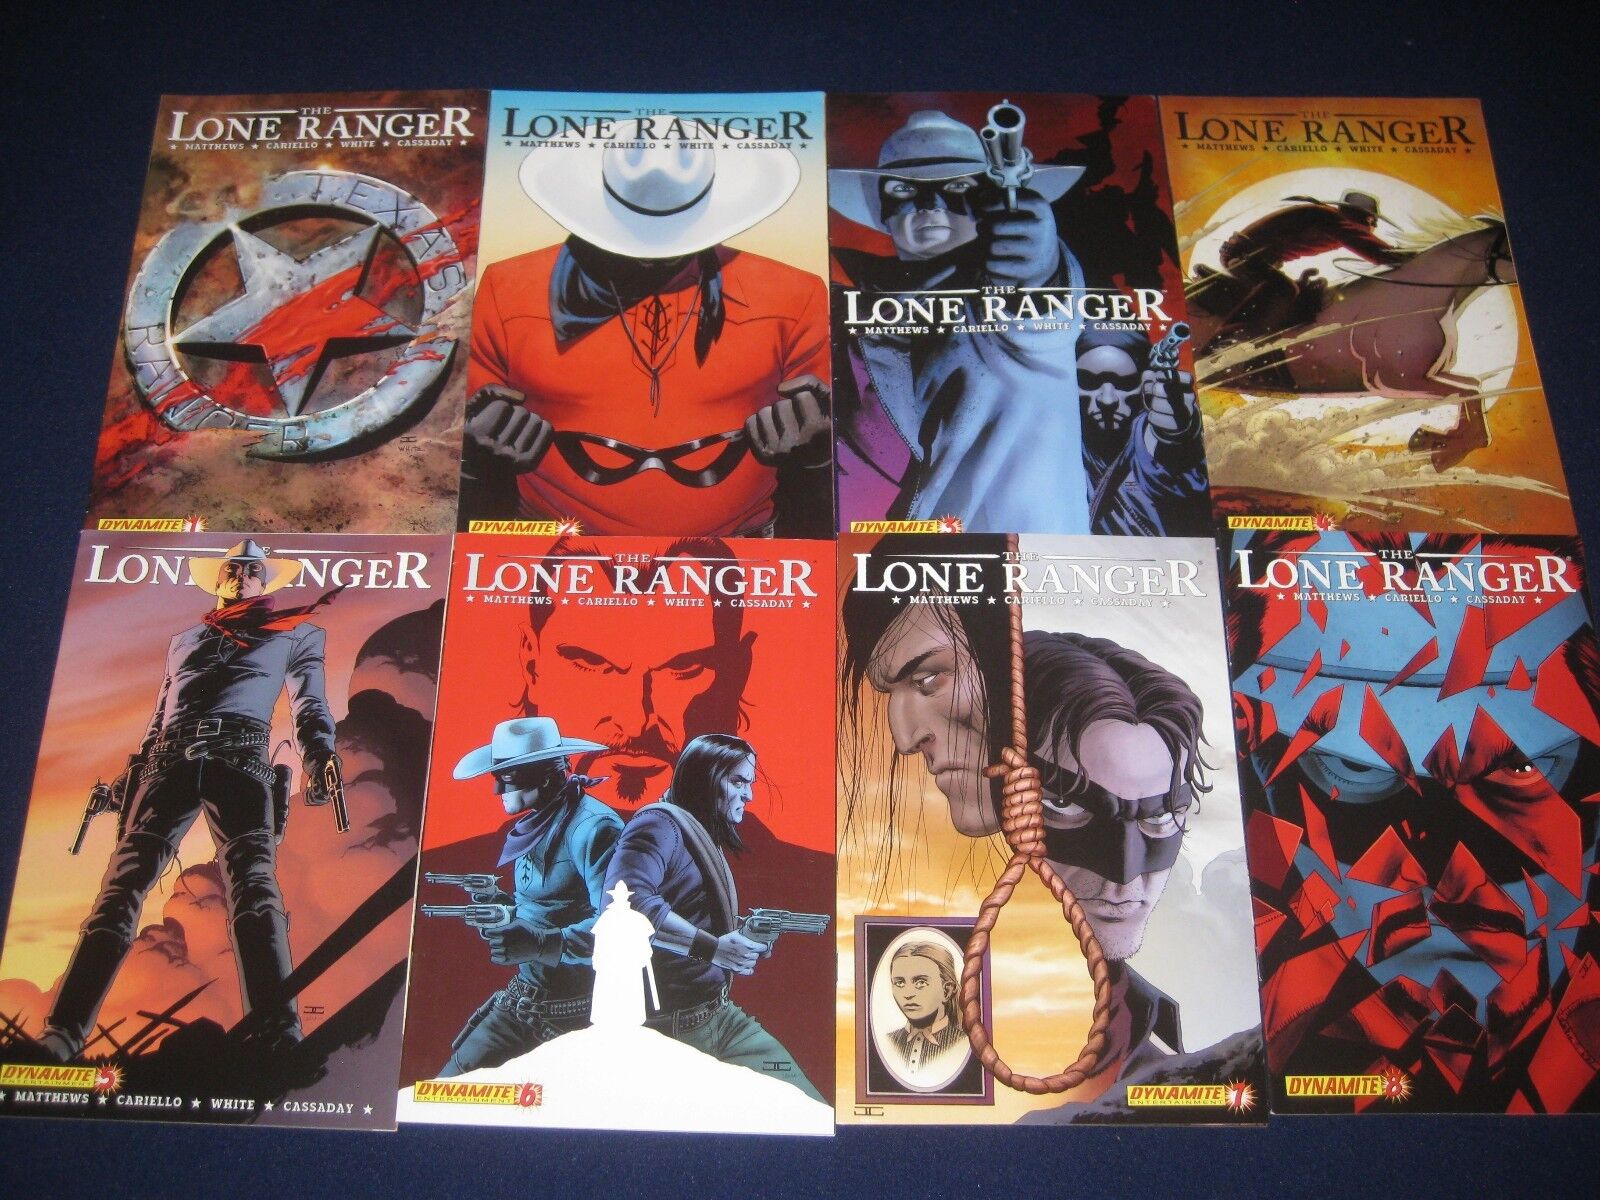 Lone Ranger 1-25 (2006) Lone Ranger Vindicated 1-4, Lone Ranger & Tonto 1-4